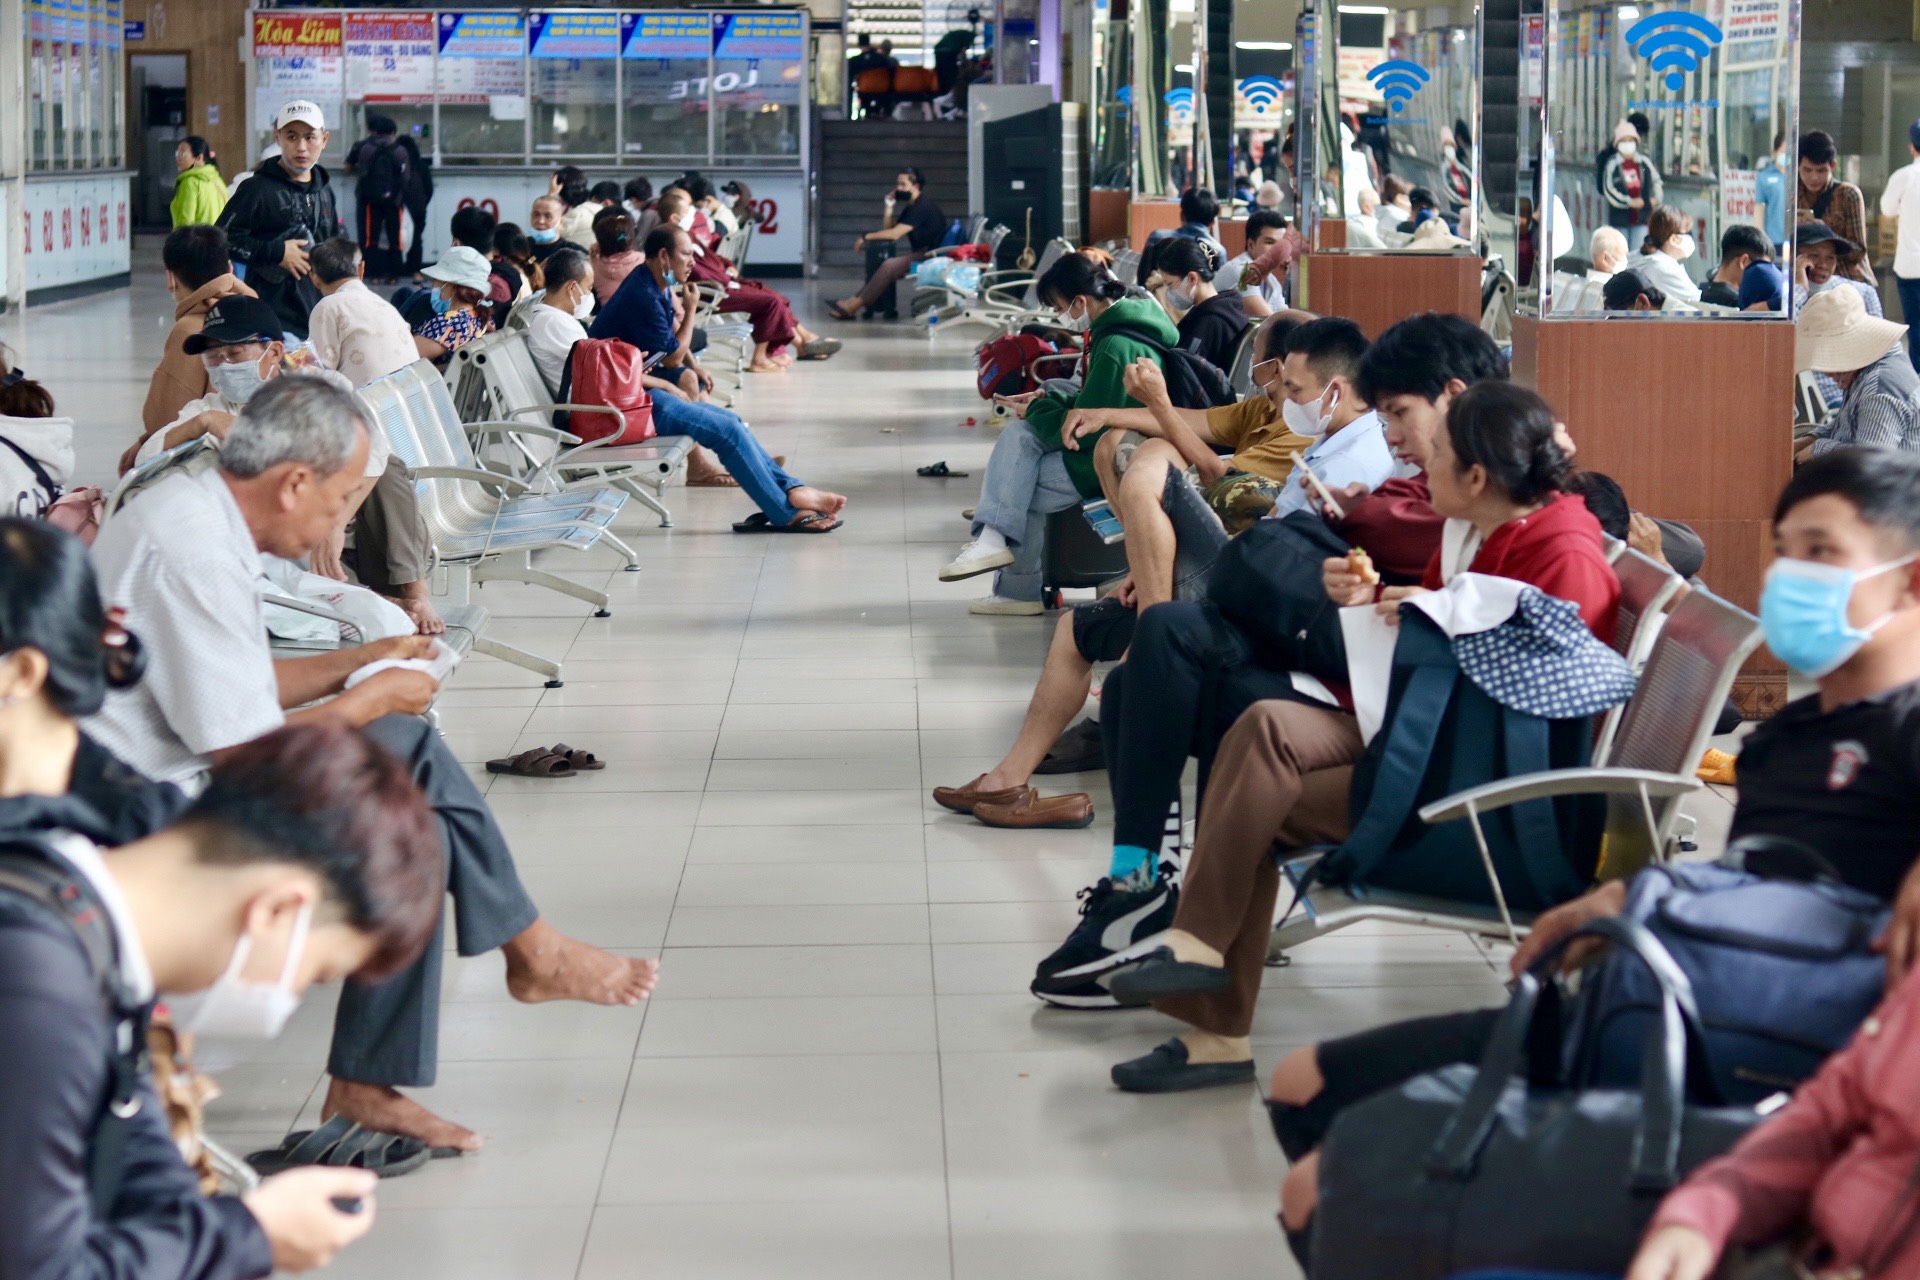 Về quê nghỉ lễ sớm: Sân bay Tân Sơn Nhất, bến xe bắt đầu nhộn nhịp - Ảnh 4.